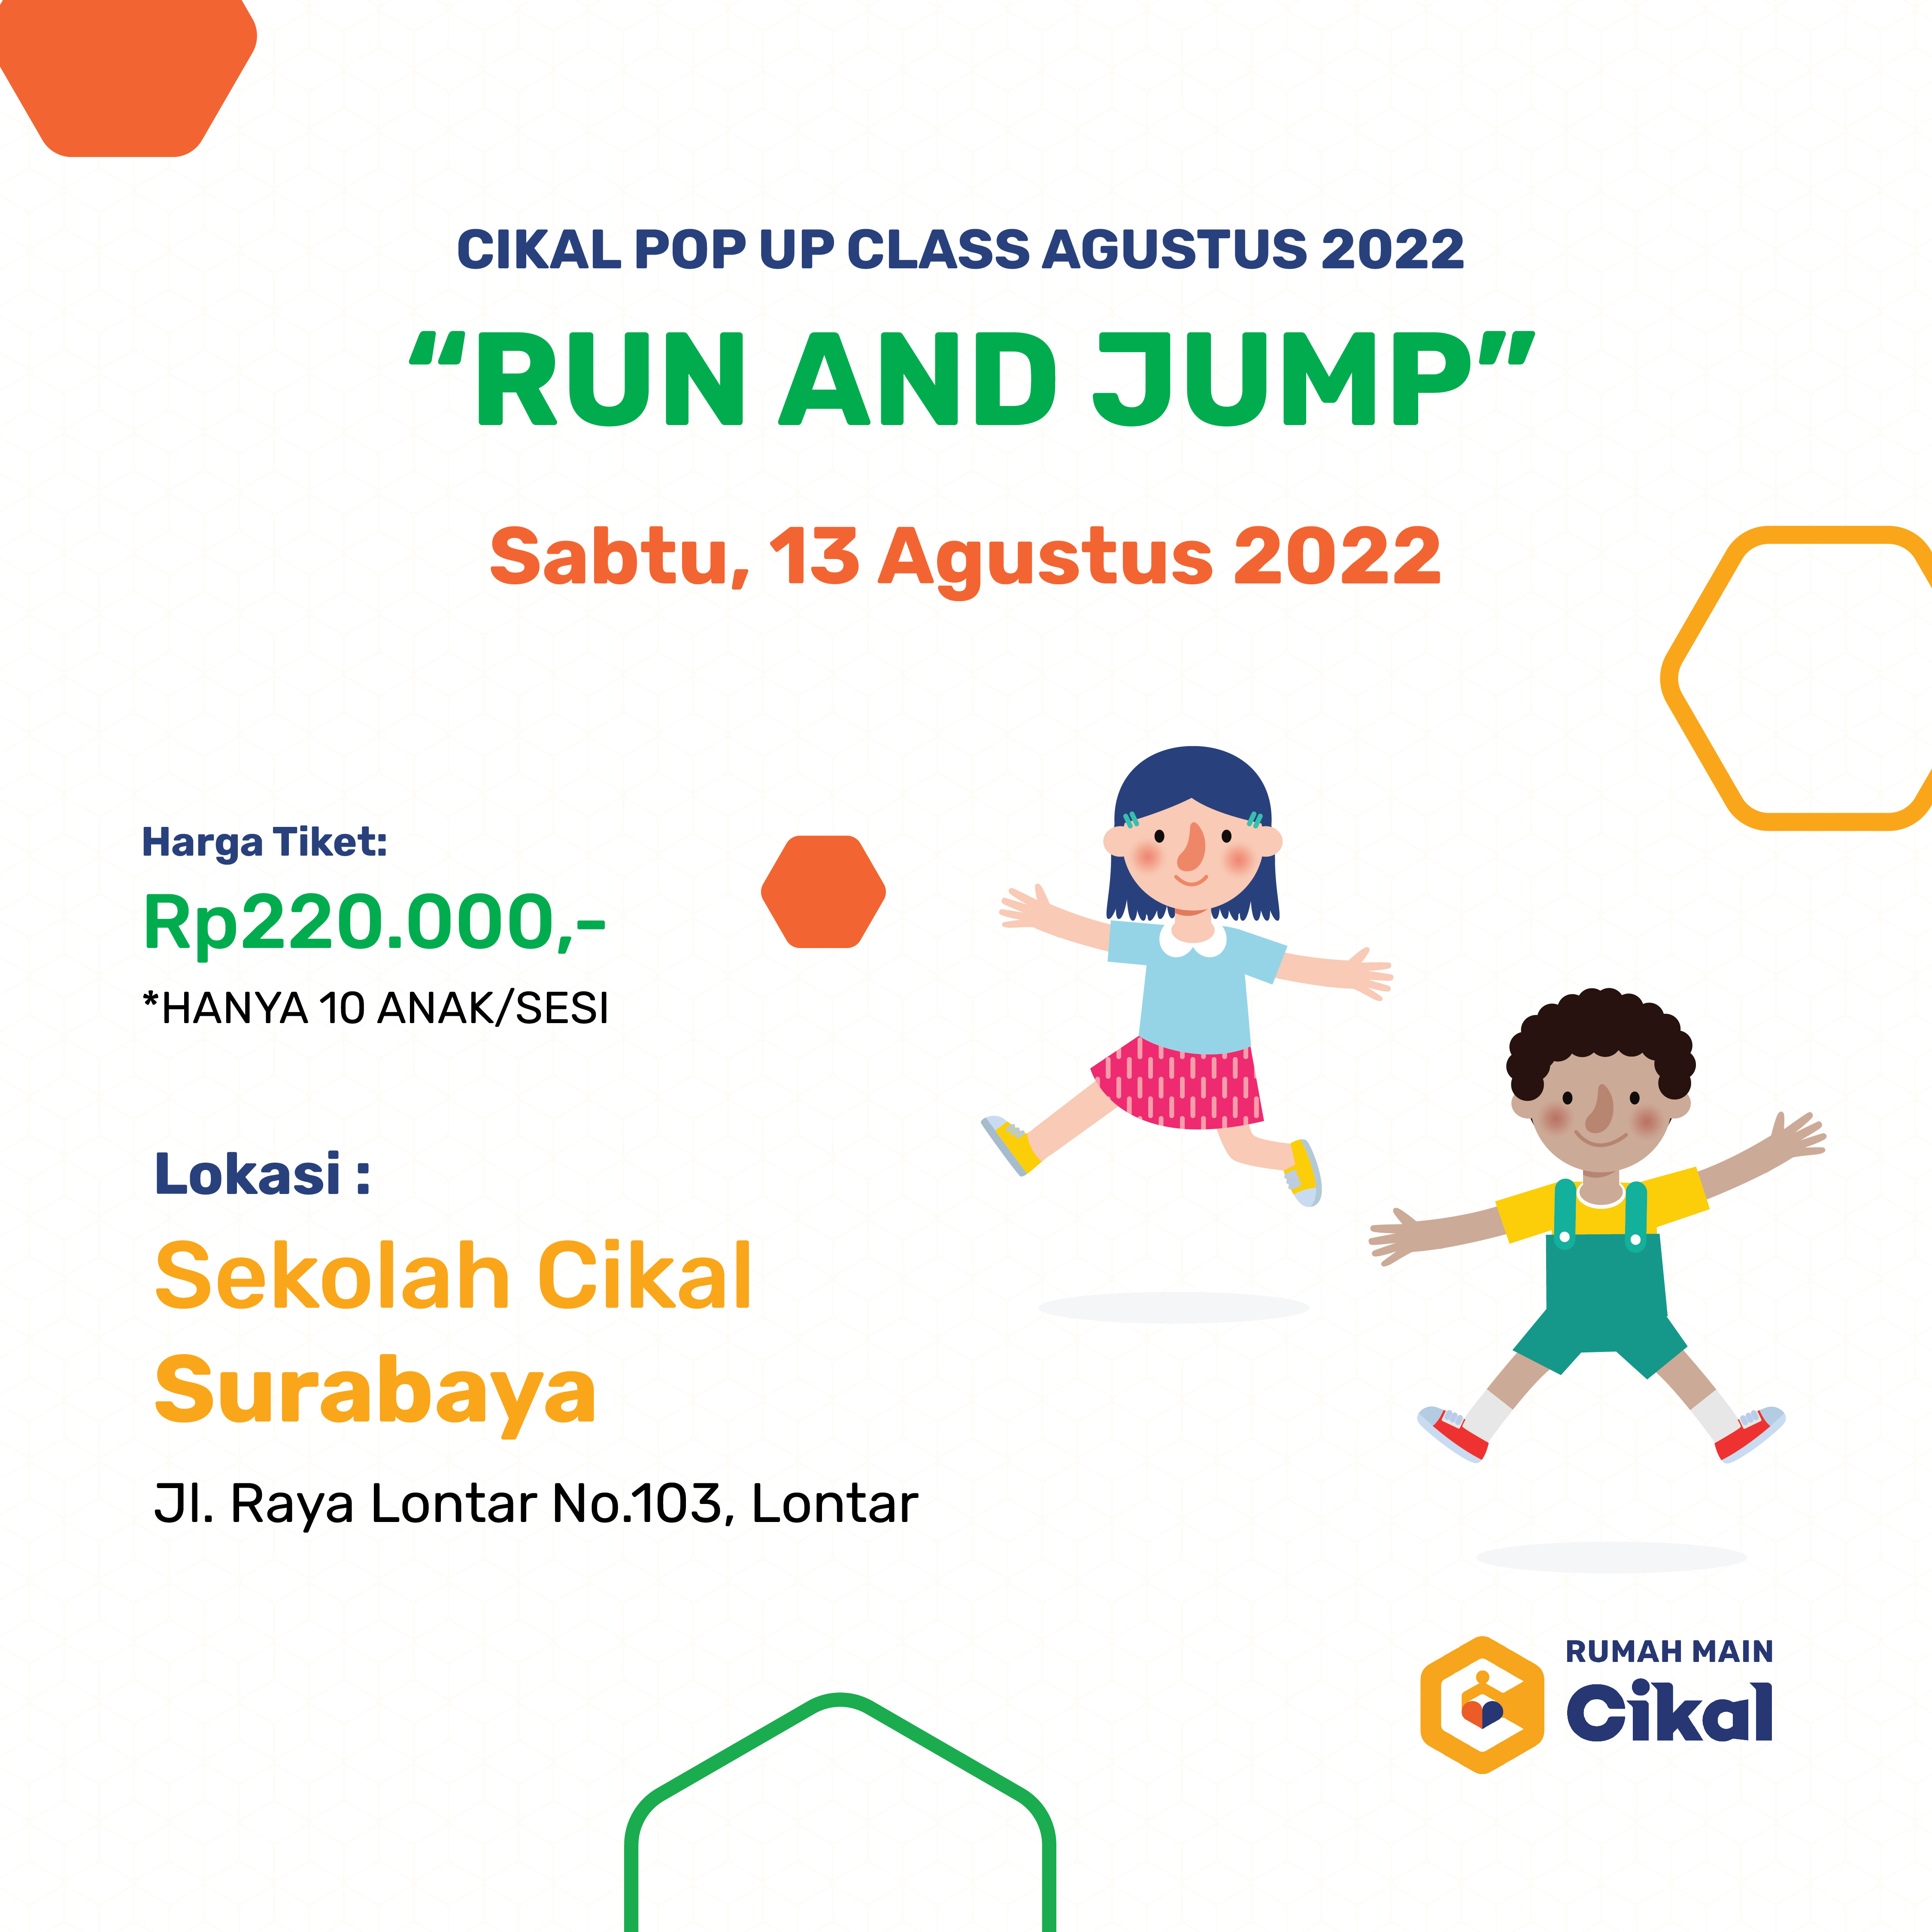 Cikal Pop Up Class Rumah Main Cikal (Agustus 2022)